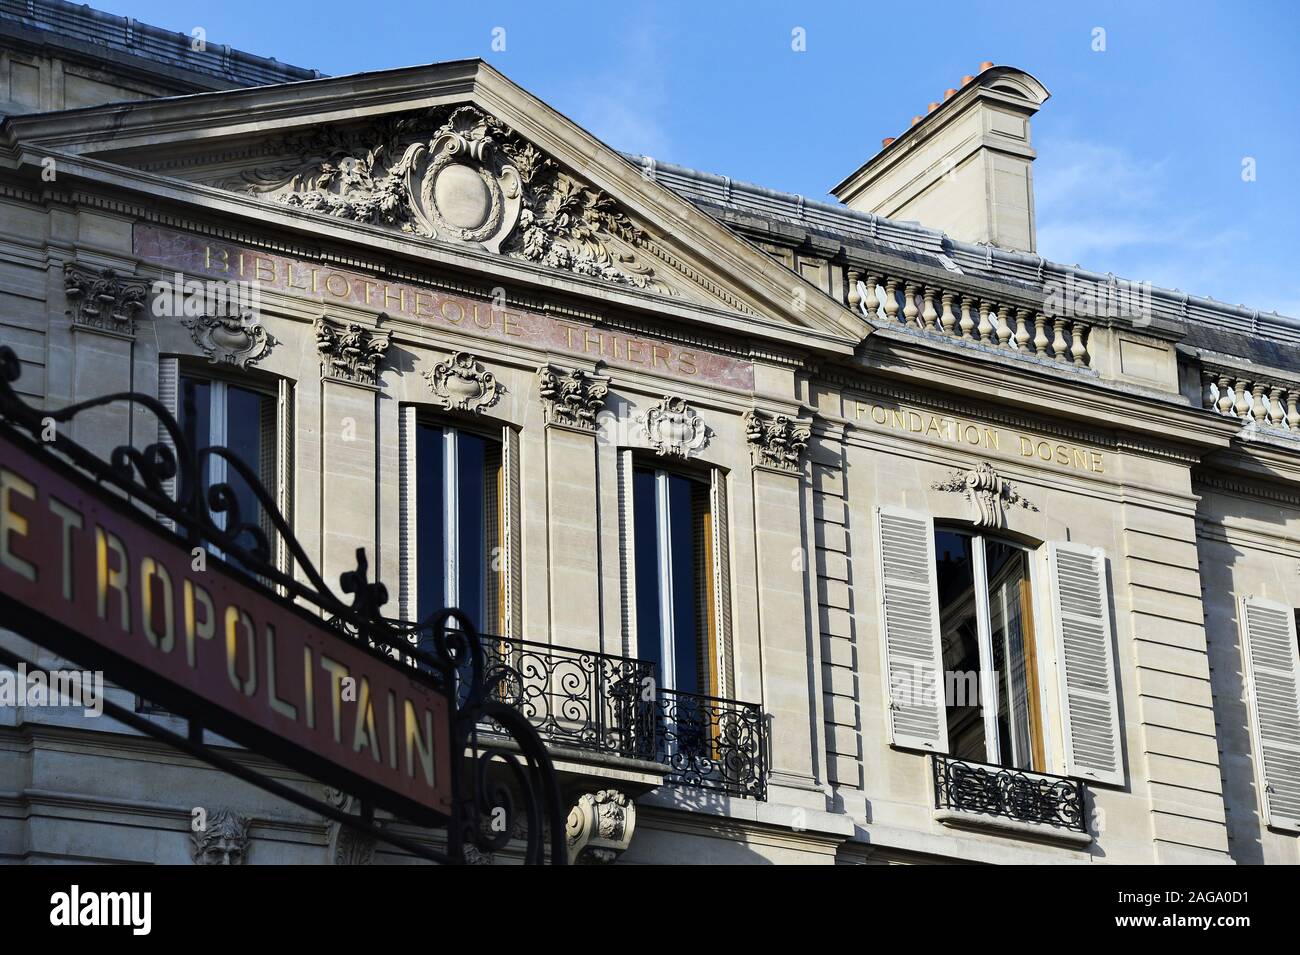 Thiers Library - Place Saint Georges - Paris - France Stock Photo